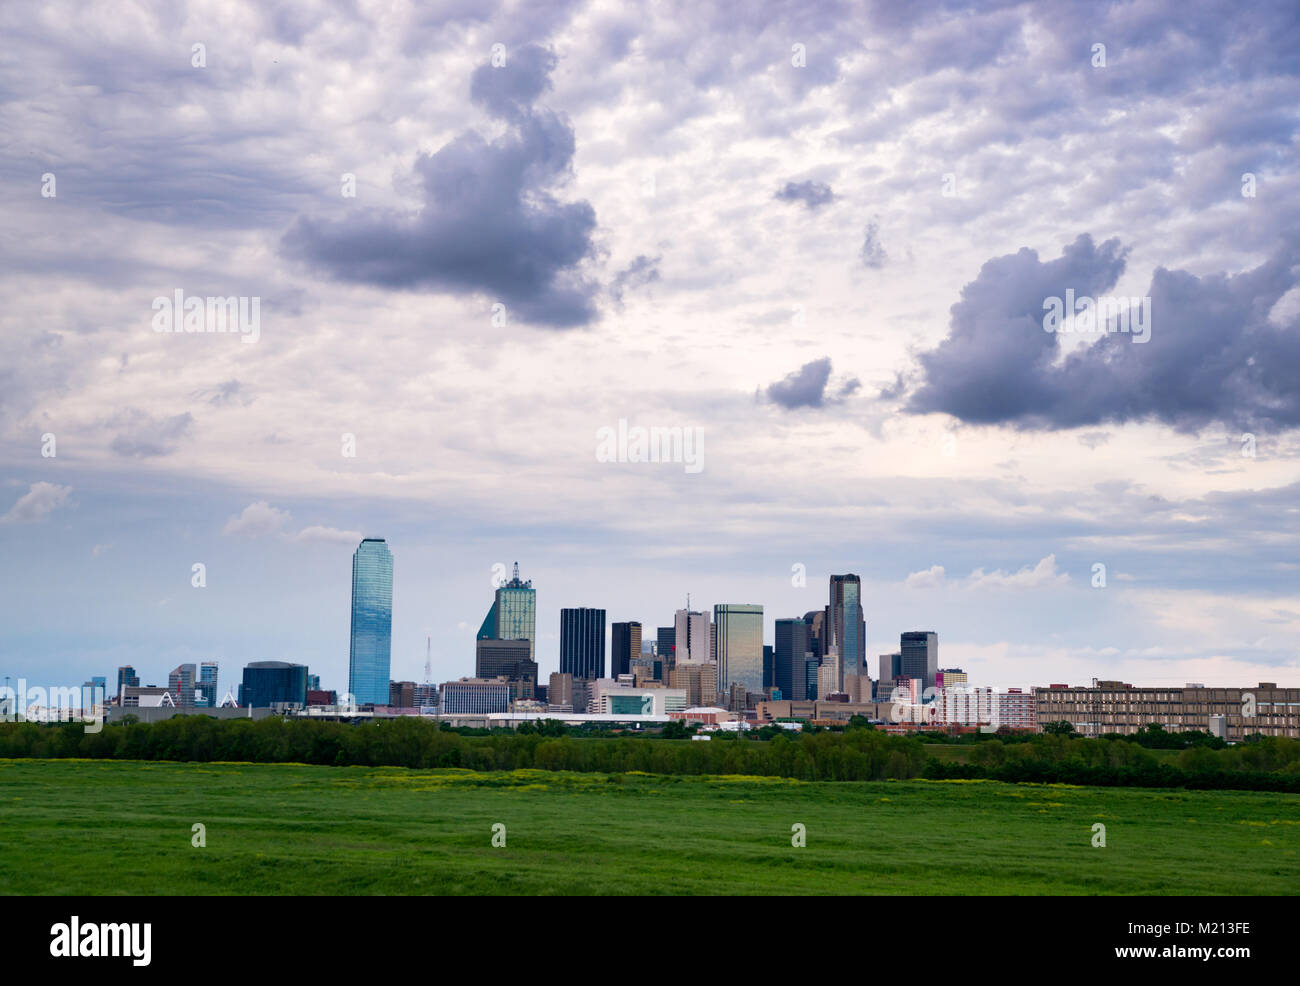 Ein üppiger, grüner Beltway erscheint vor der städtischen Landschaft von Houston, TX, USA Stockfoto